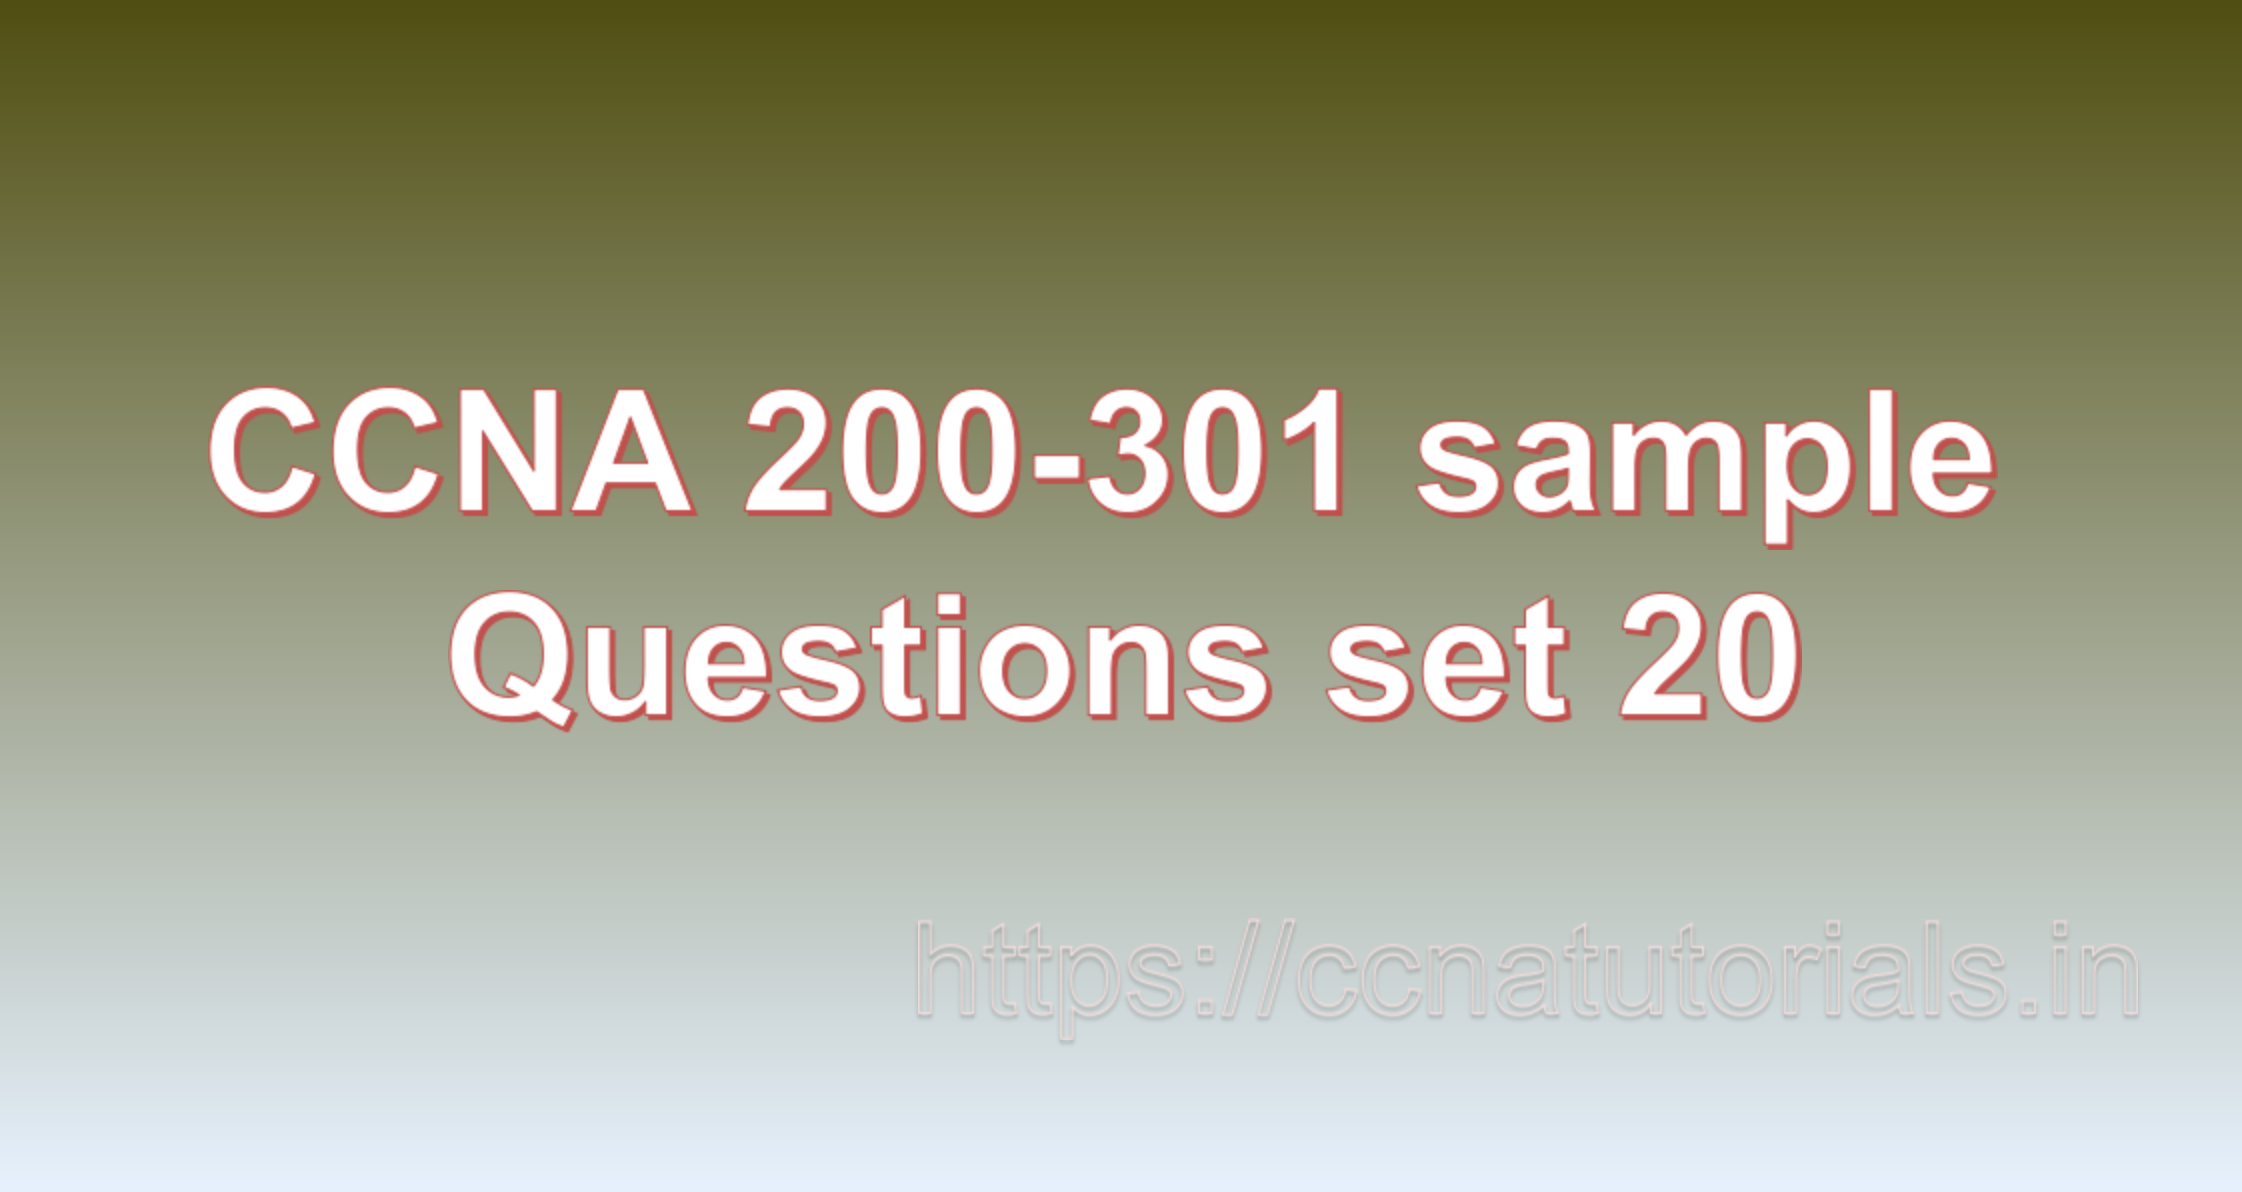 ccna sample questions set 20, ccna tutorials, CCNA Exam, ccna